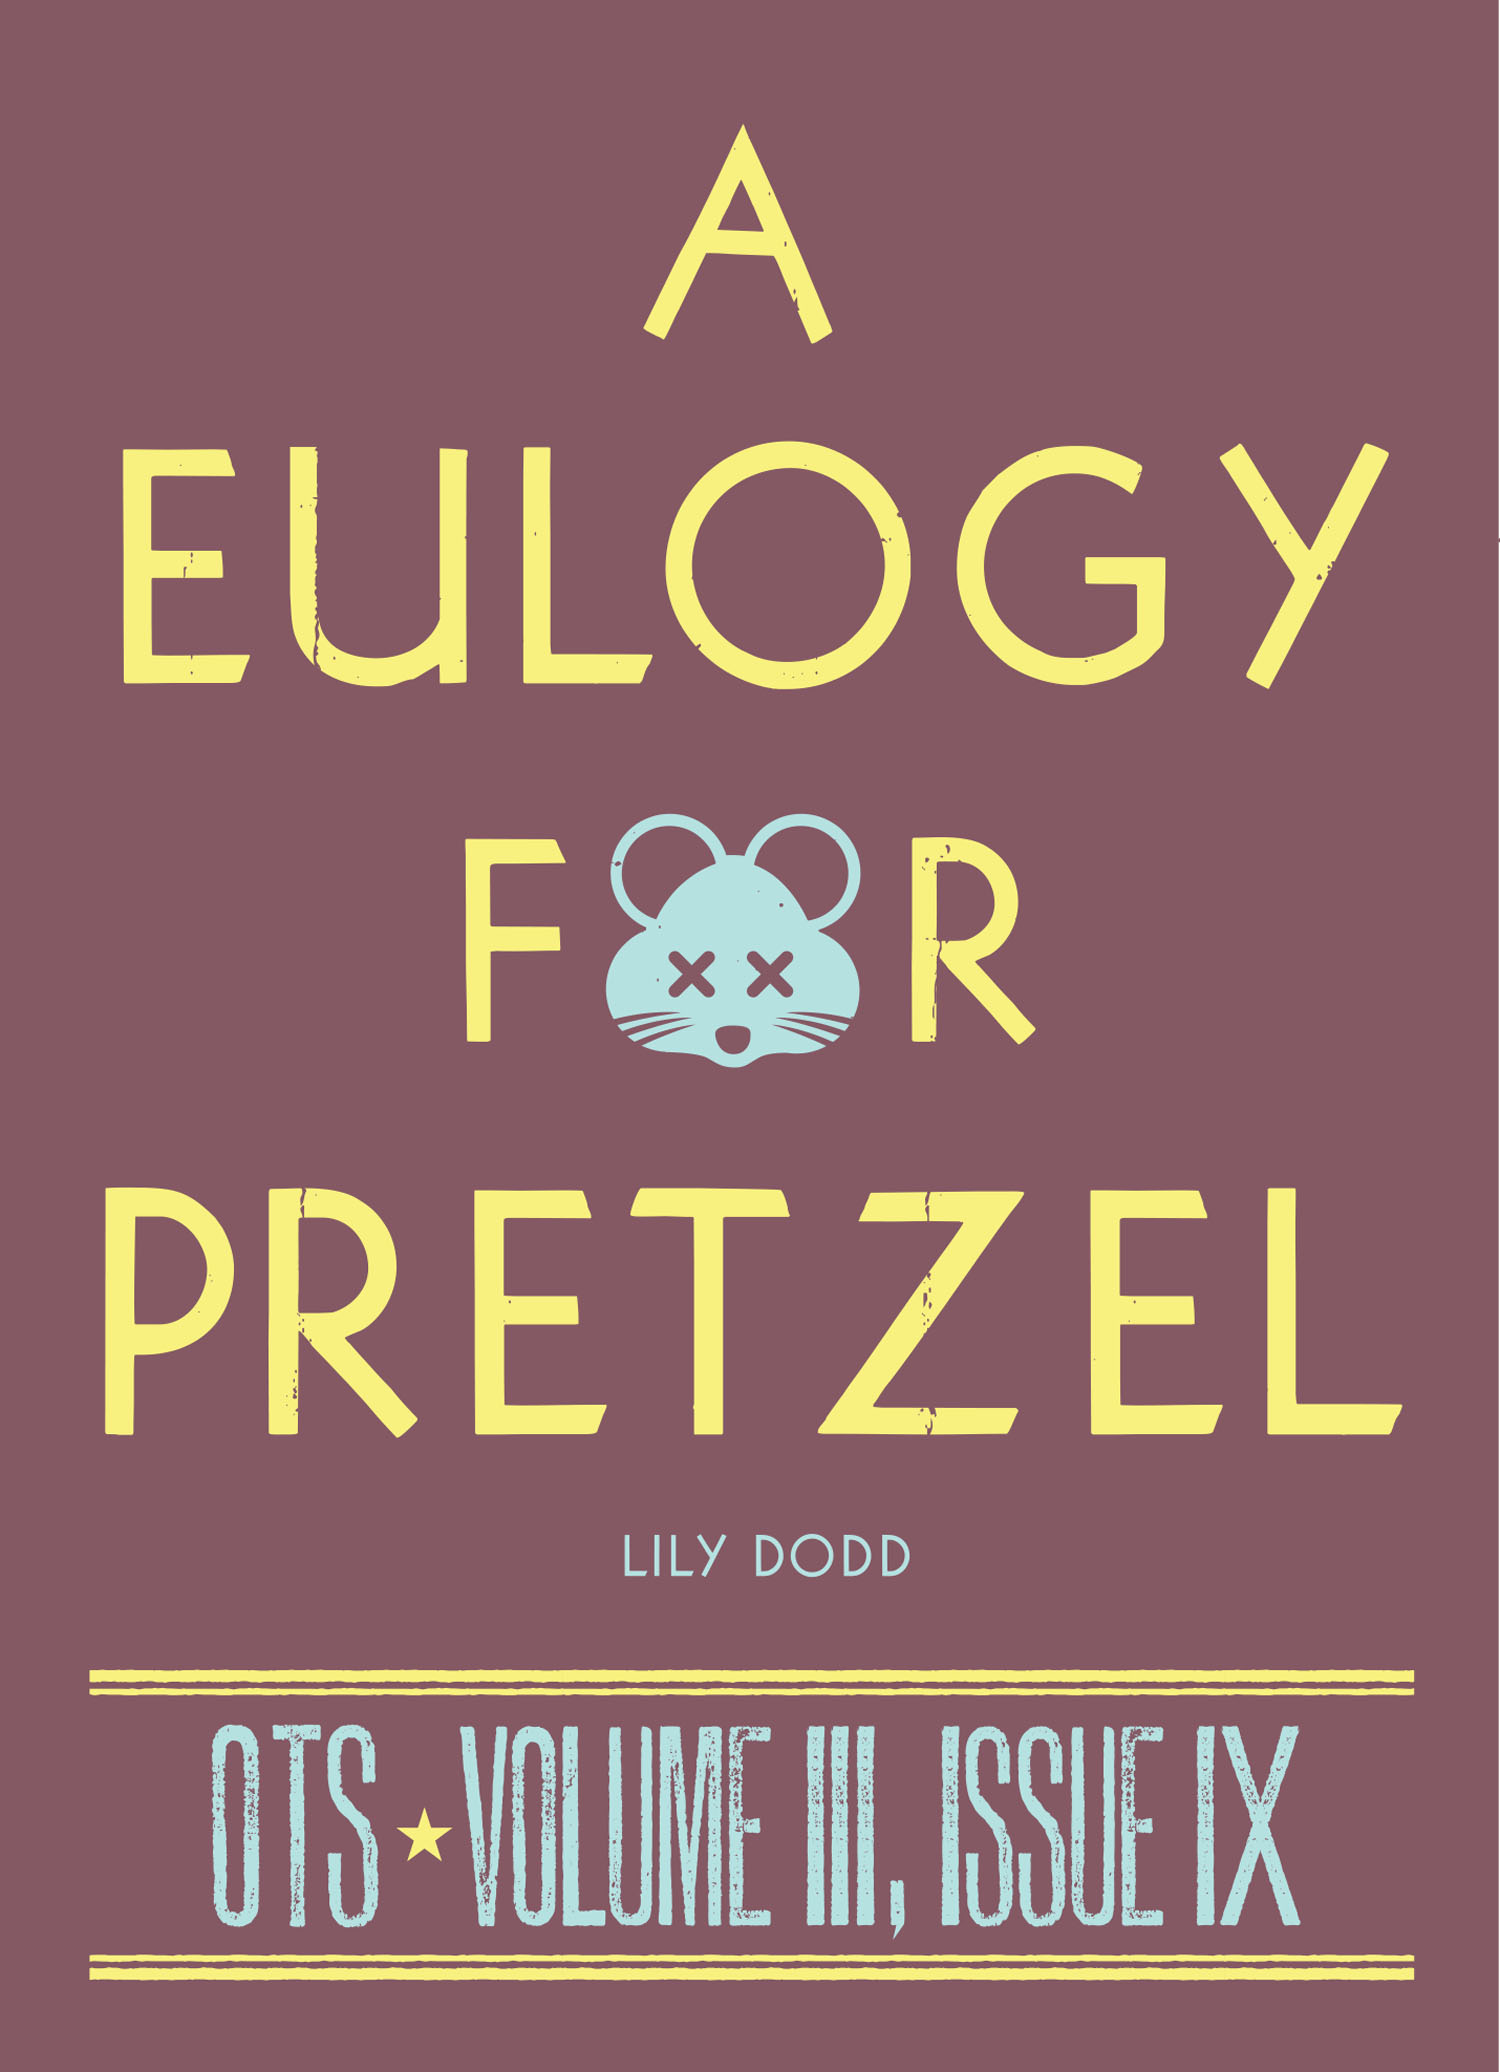 A Eulogy for Pretzel